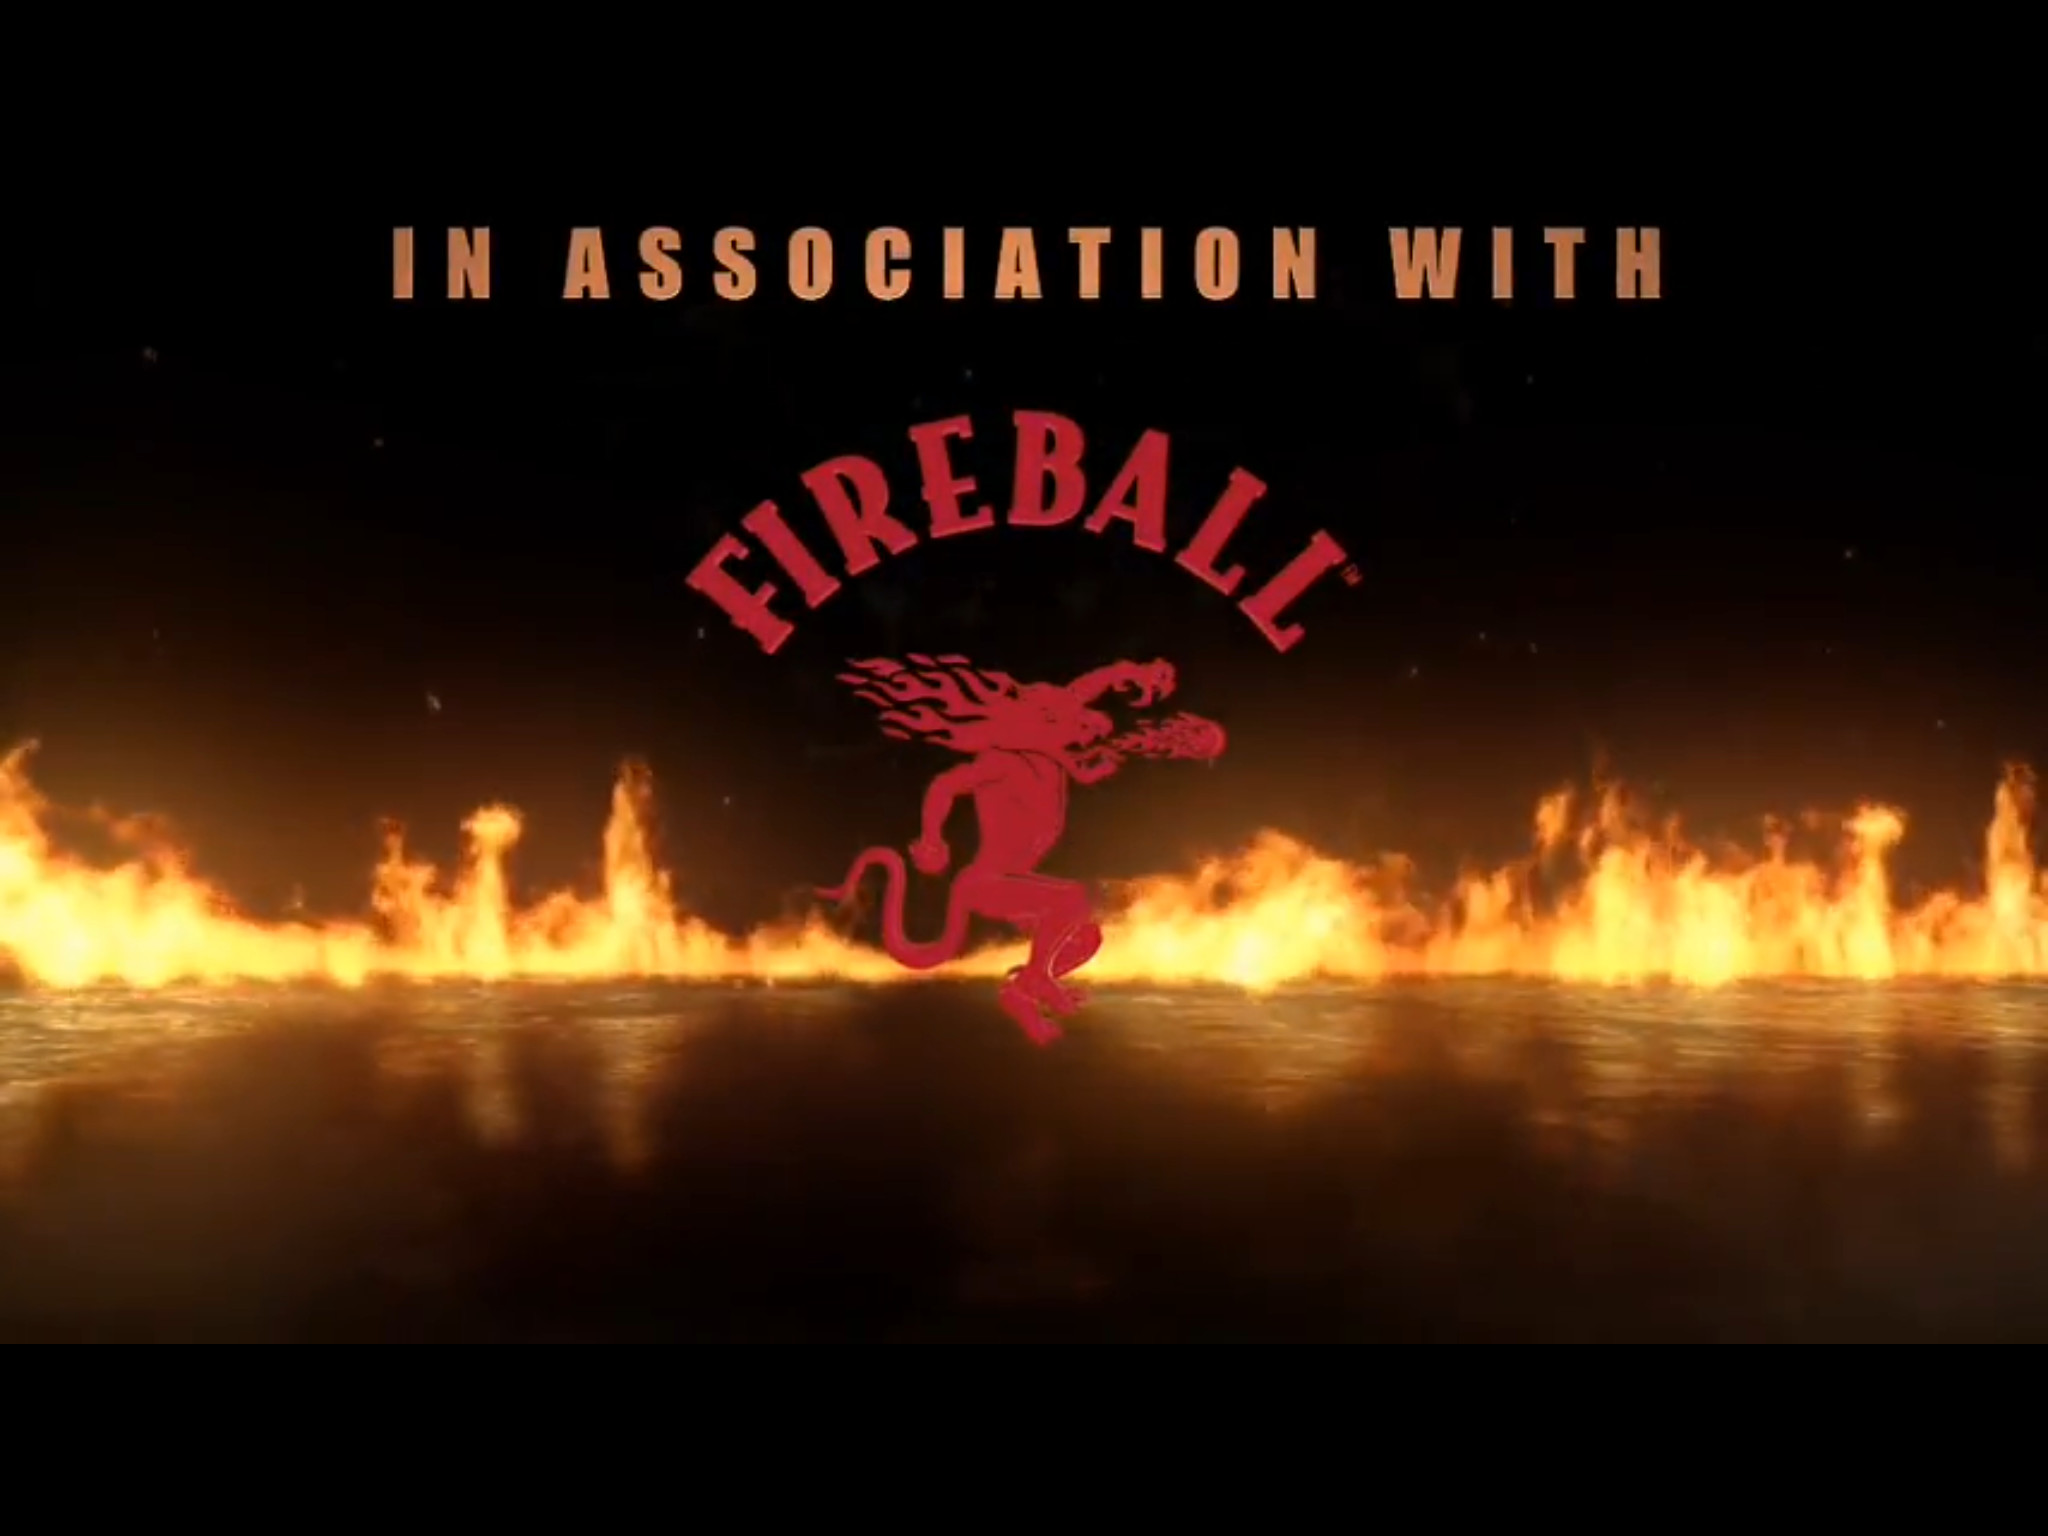 Fireball Whisky Wallpaper Image